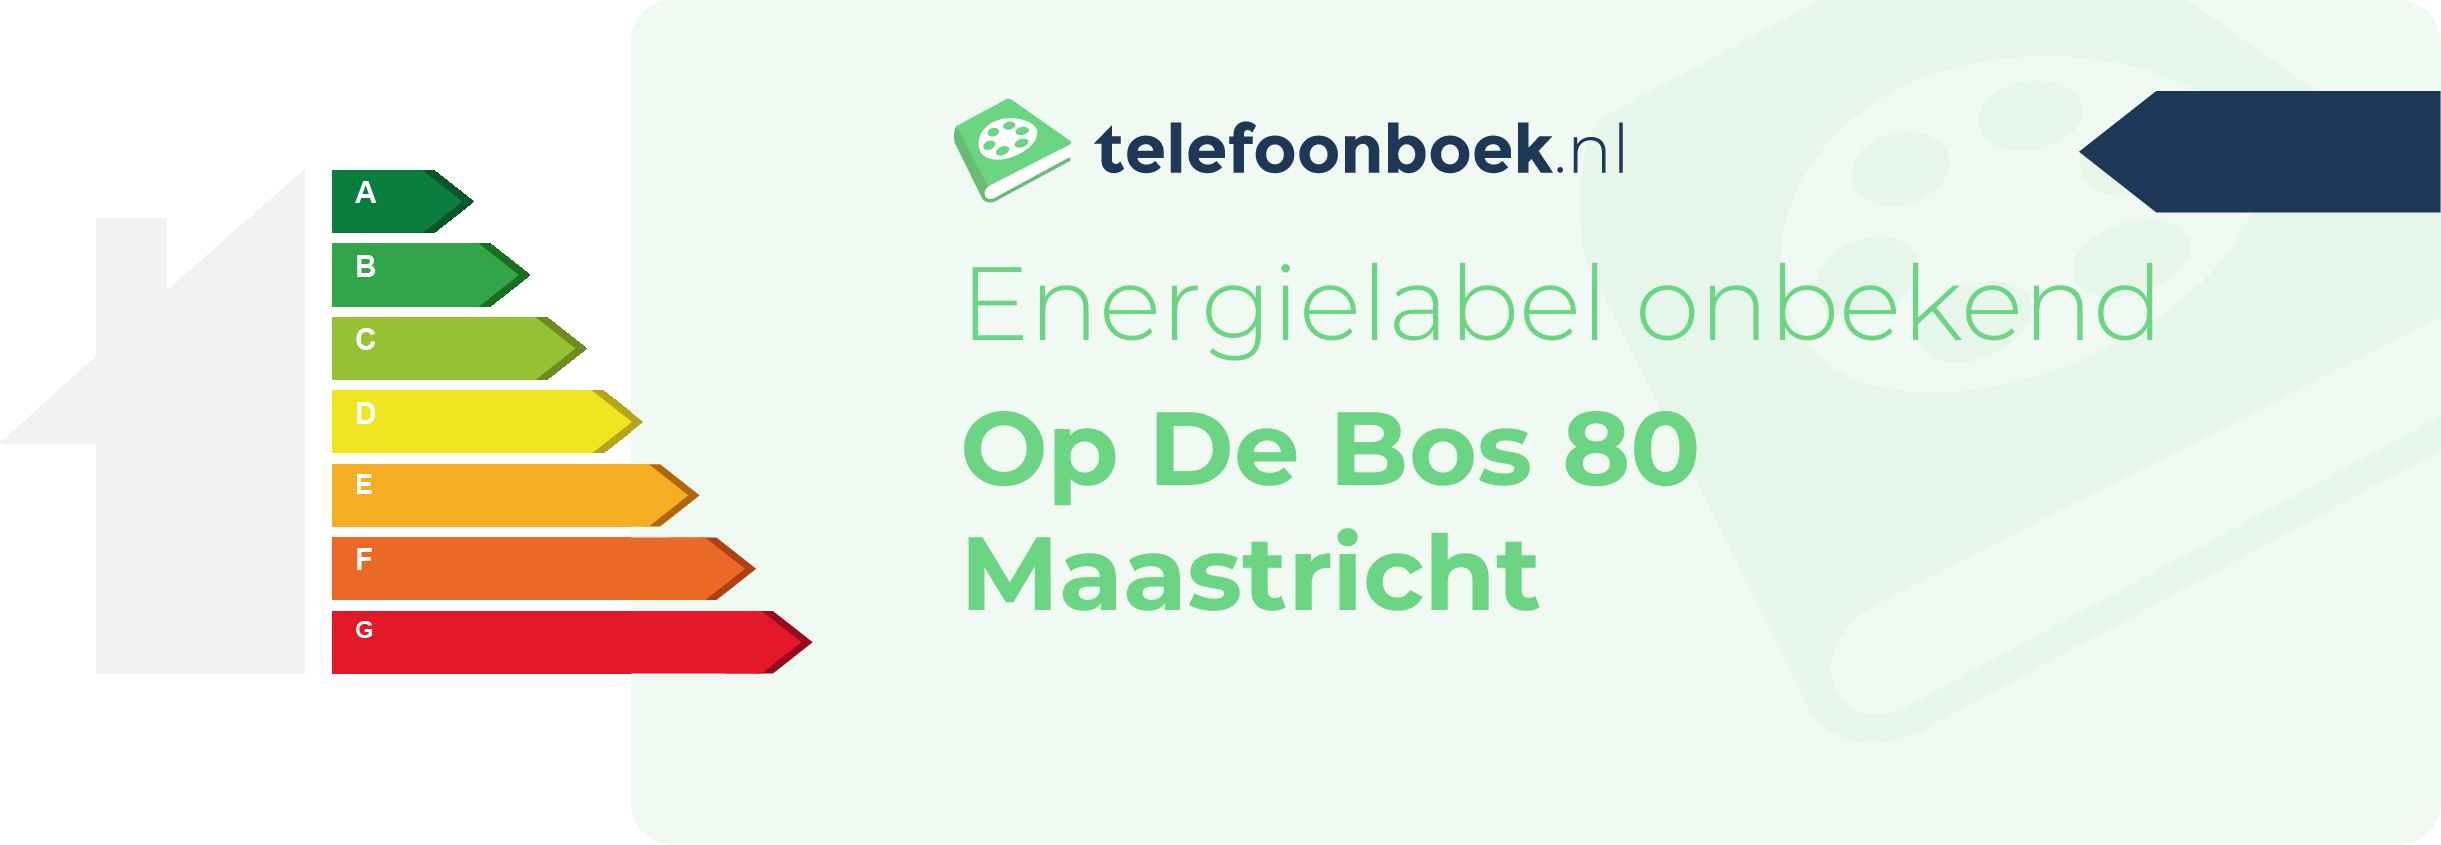 Energielabel Op De Bos 80 Maastricht